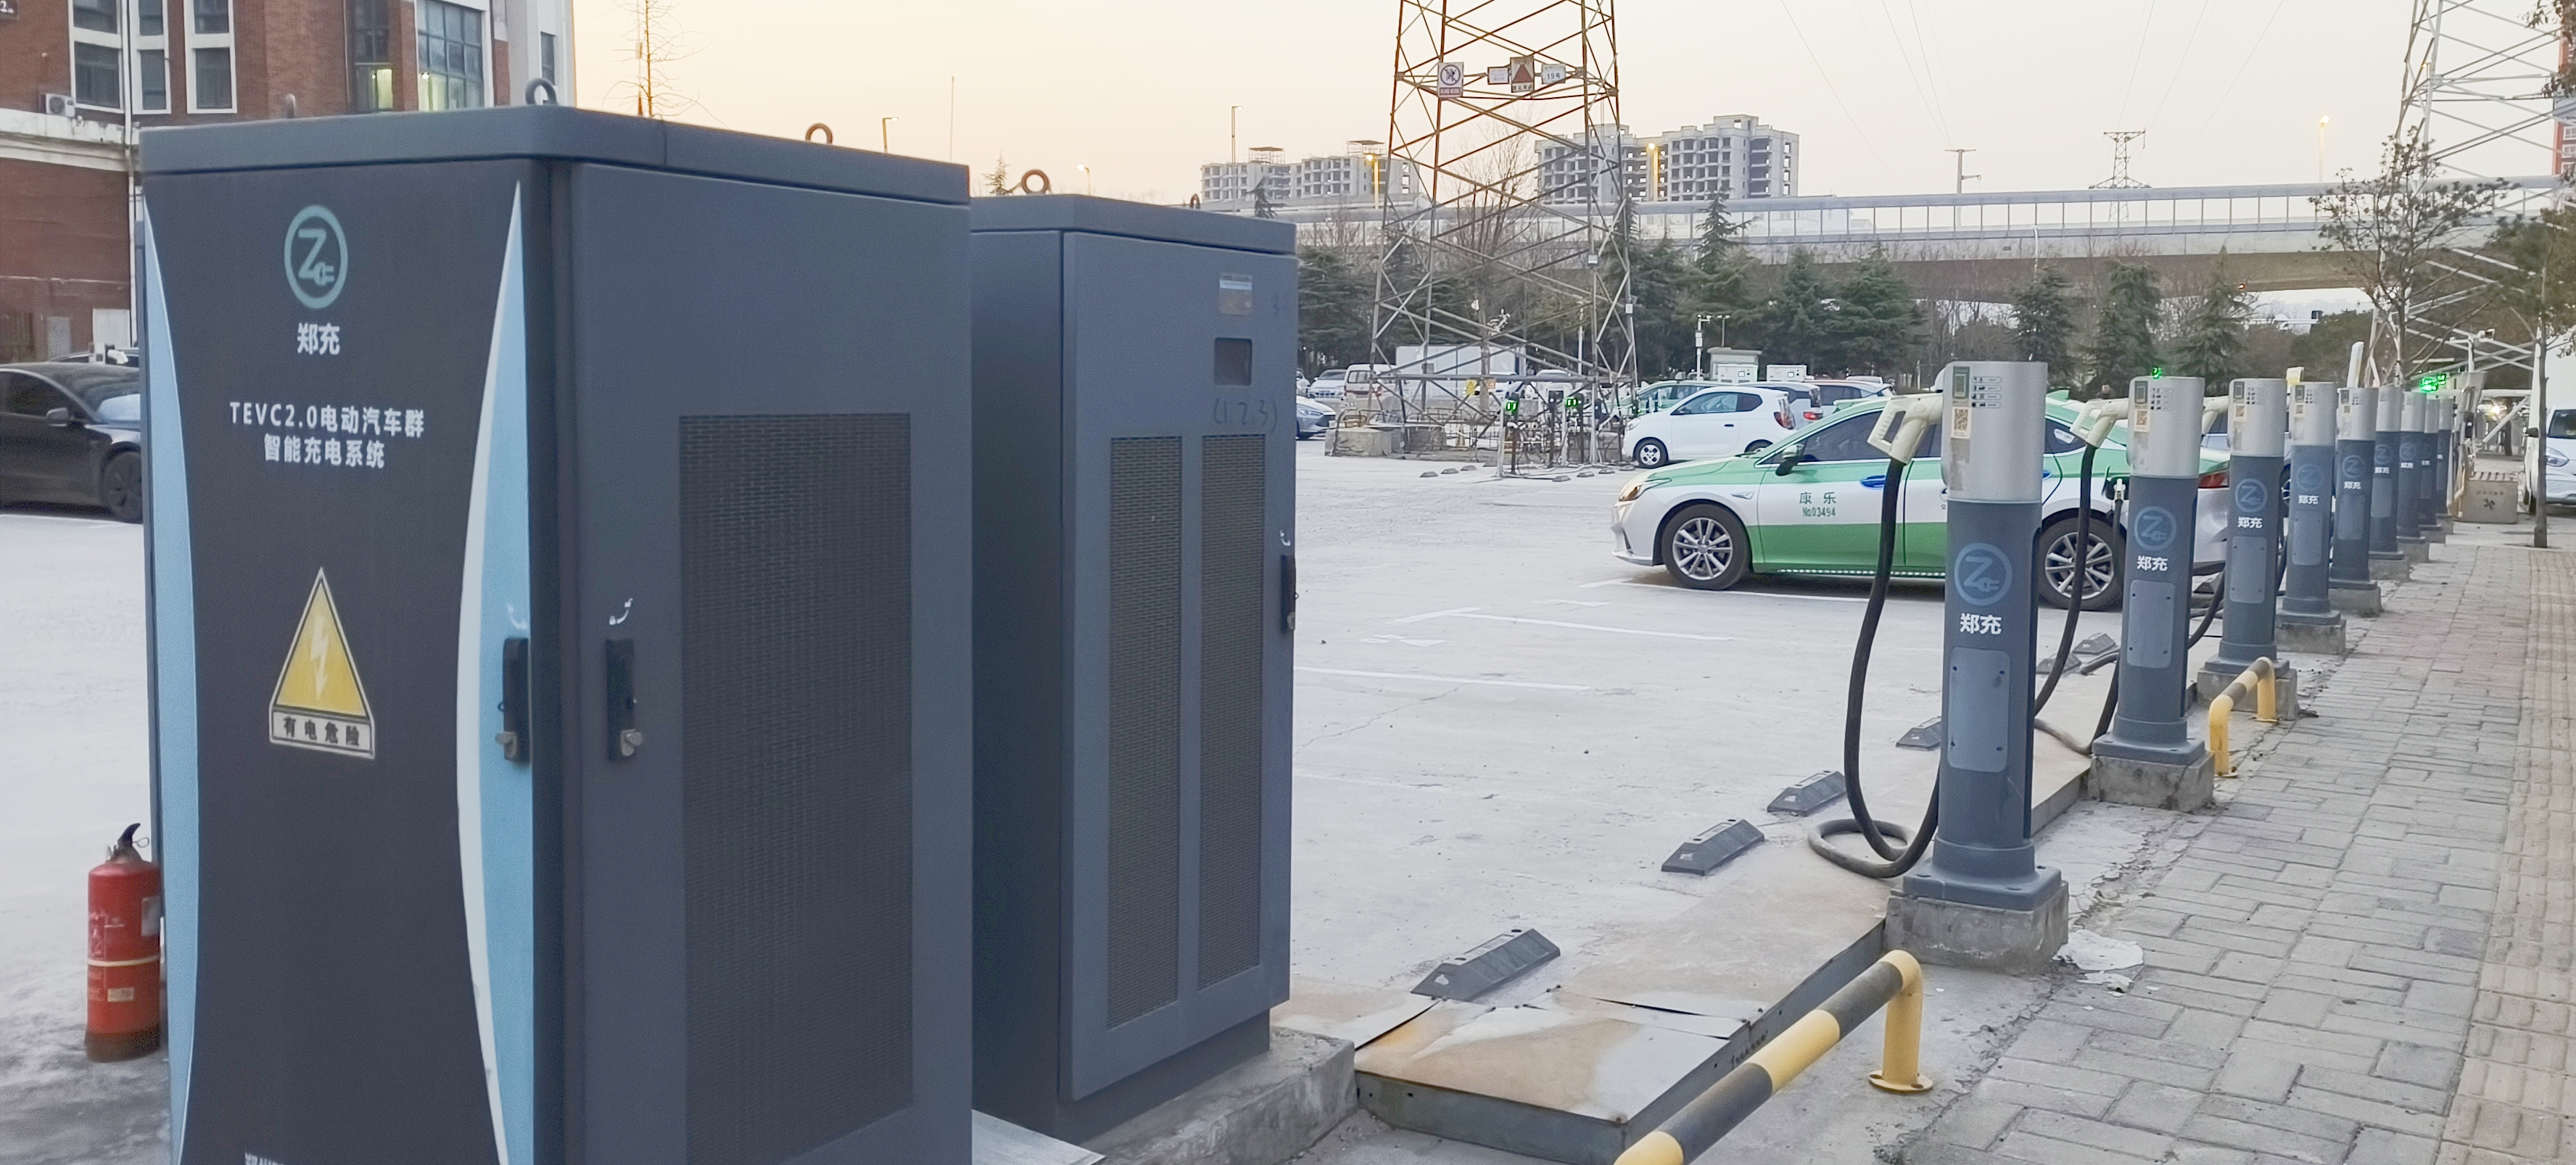 布局电动汽车充电基础设施10年后郑州将有110万个“充电桩”